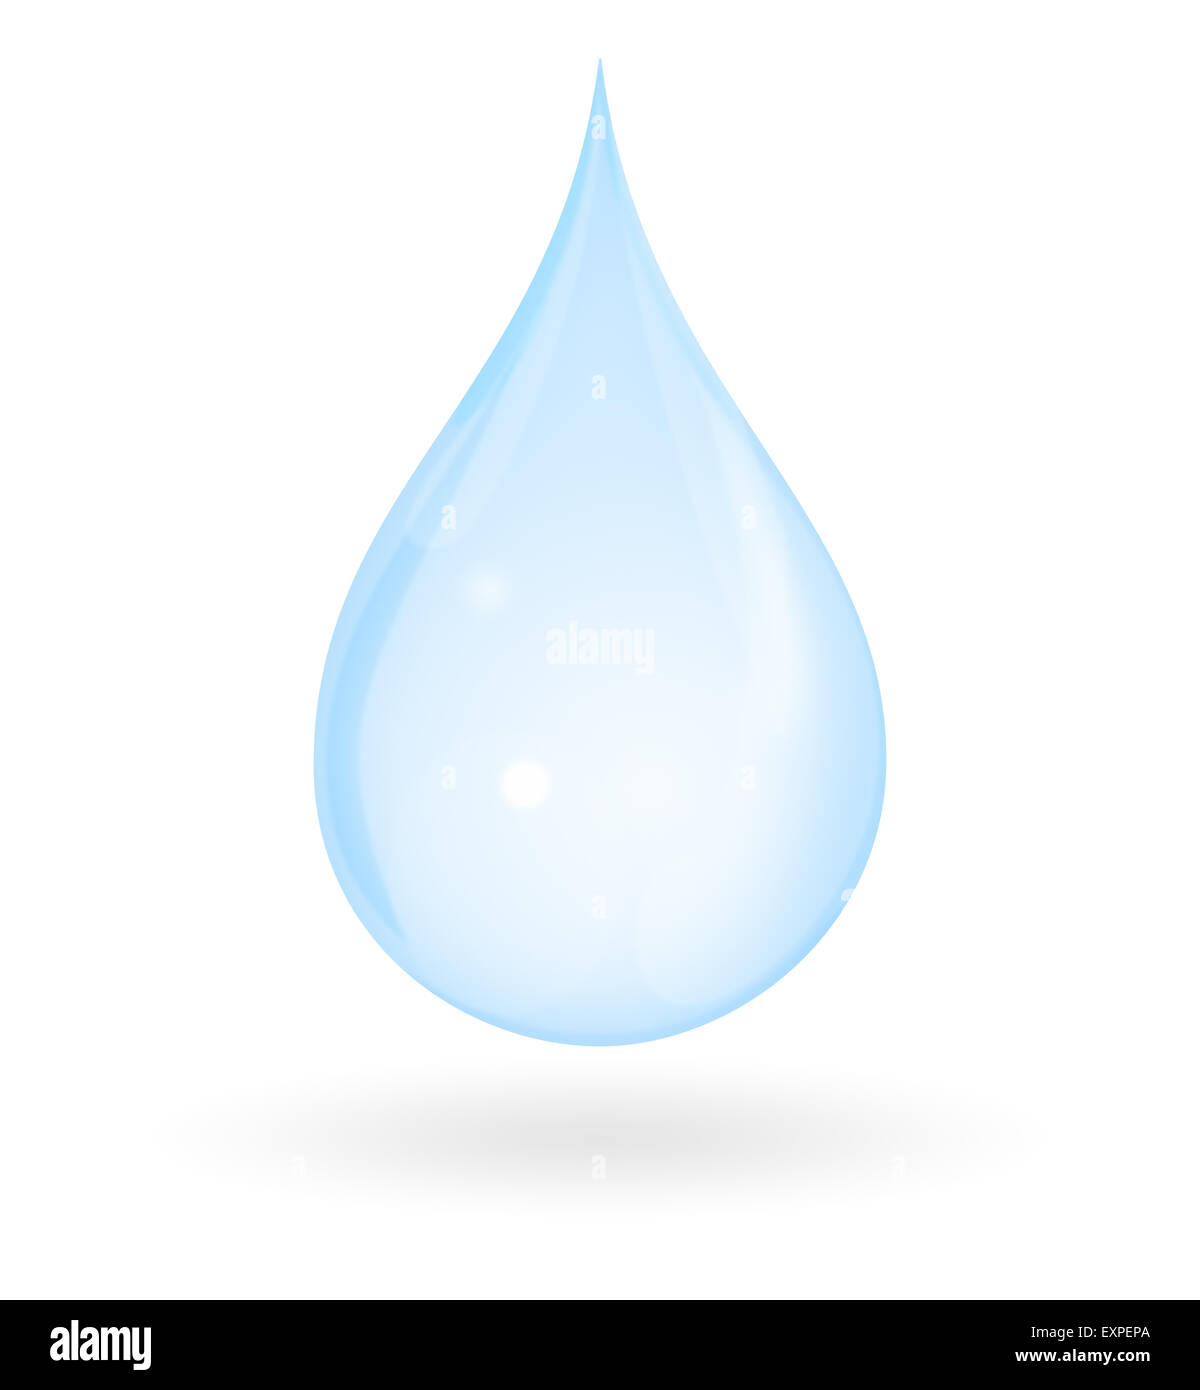 Goutte d'eau bleu avec ombre isolé sur un fond blanc. Pure représente, frais, naturels et innocents. Banque D'Images